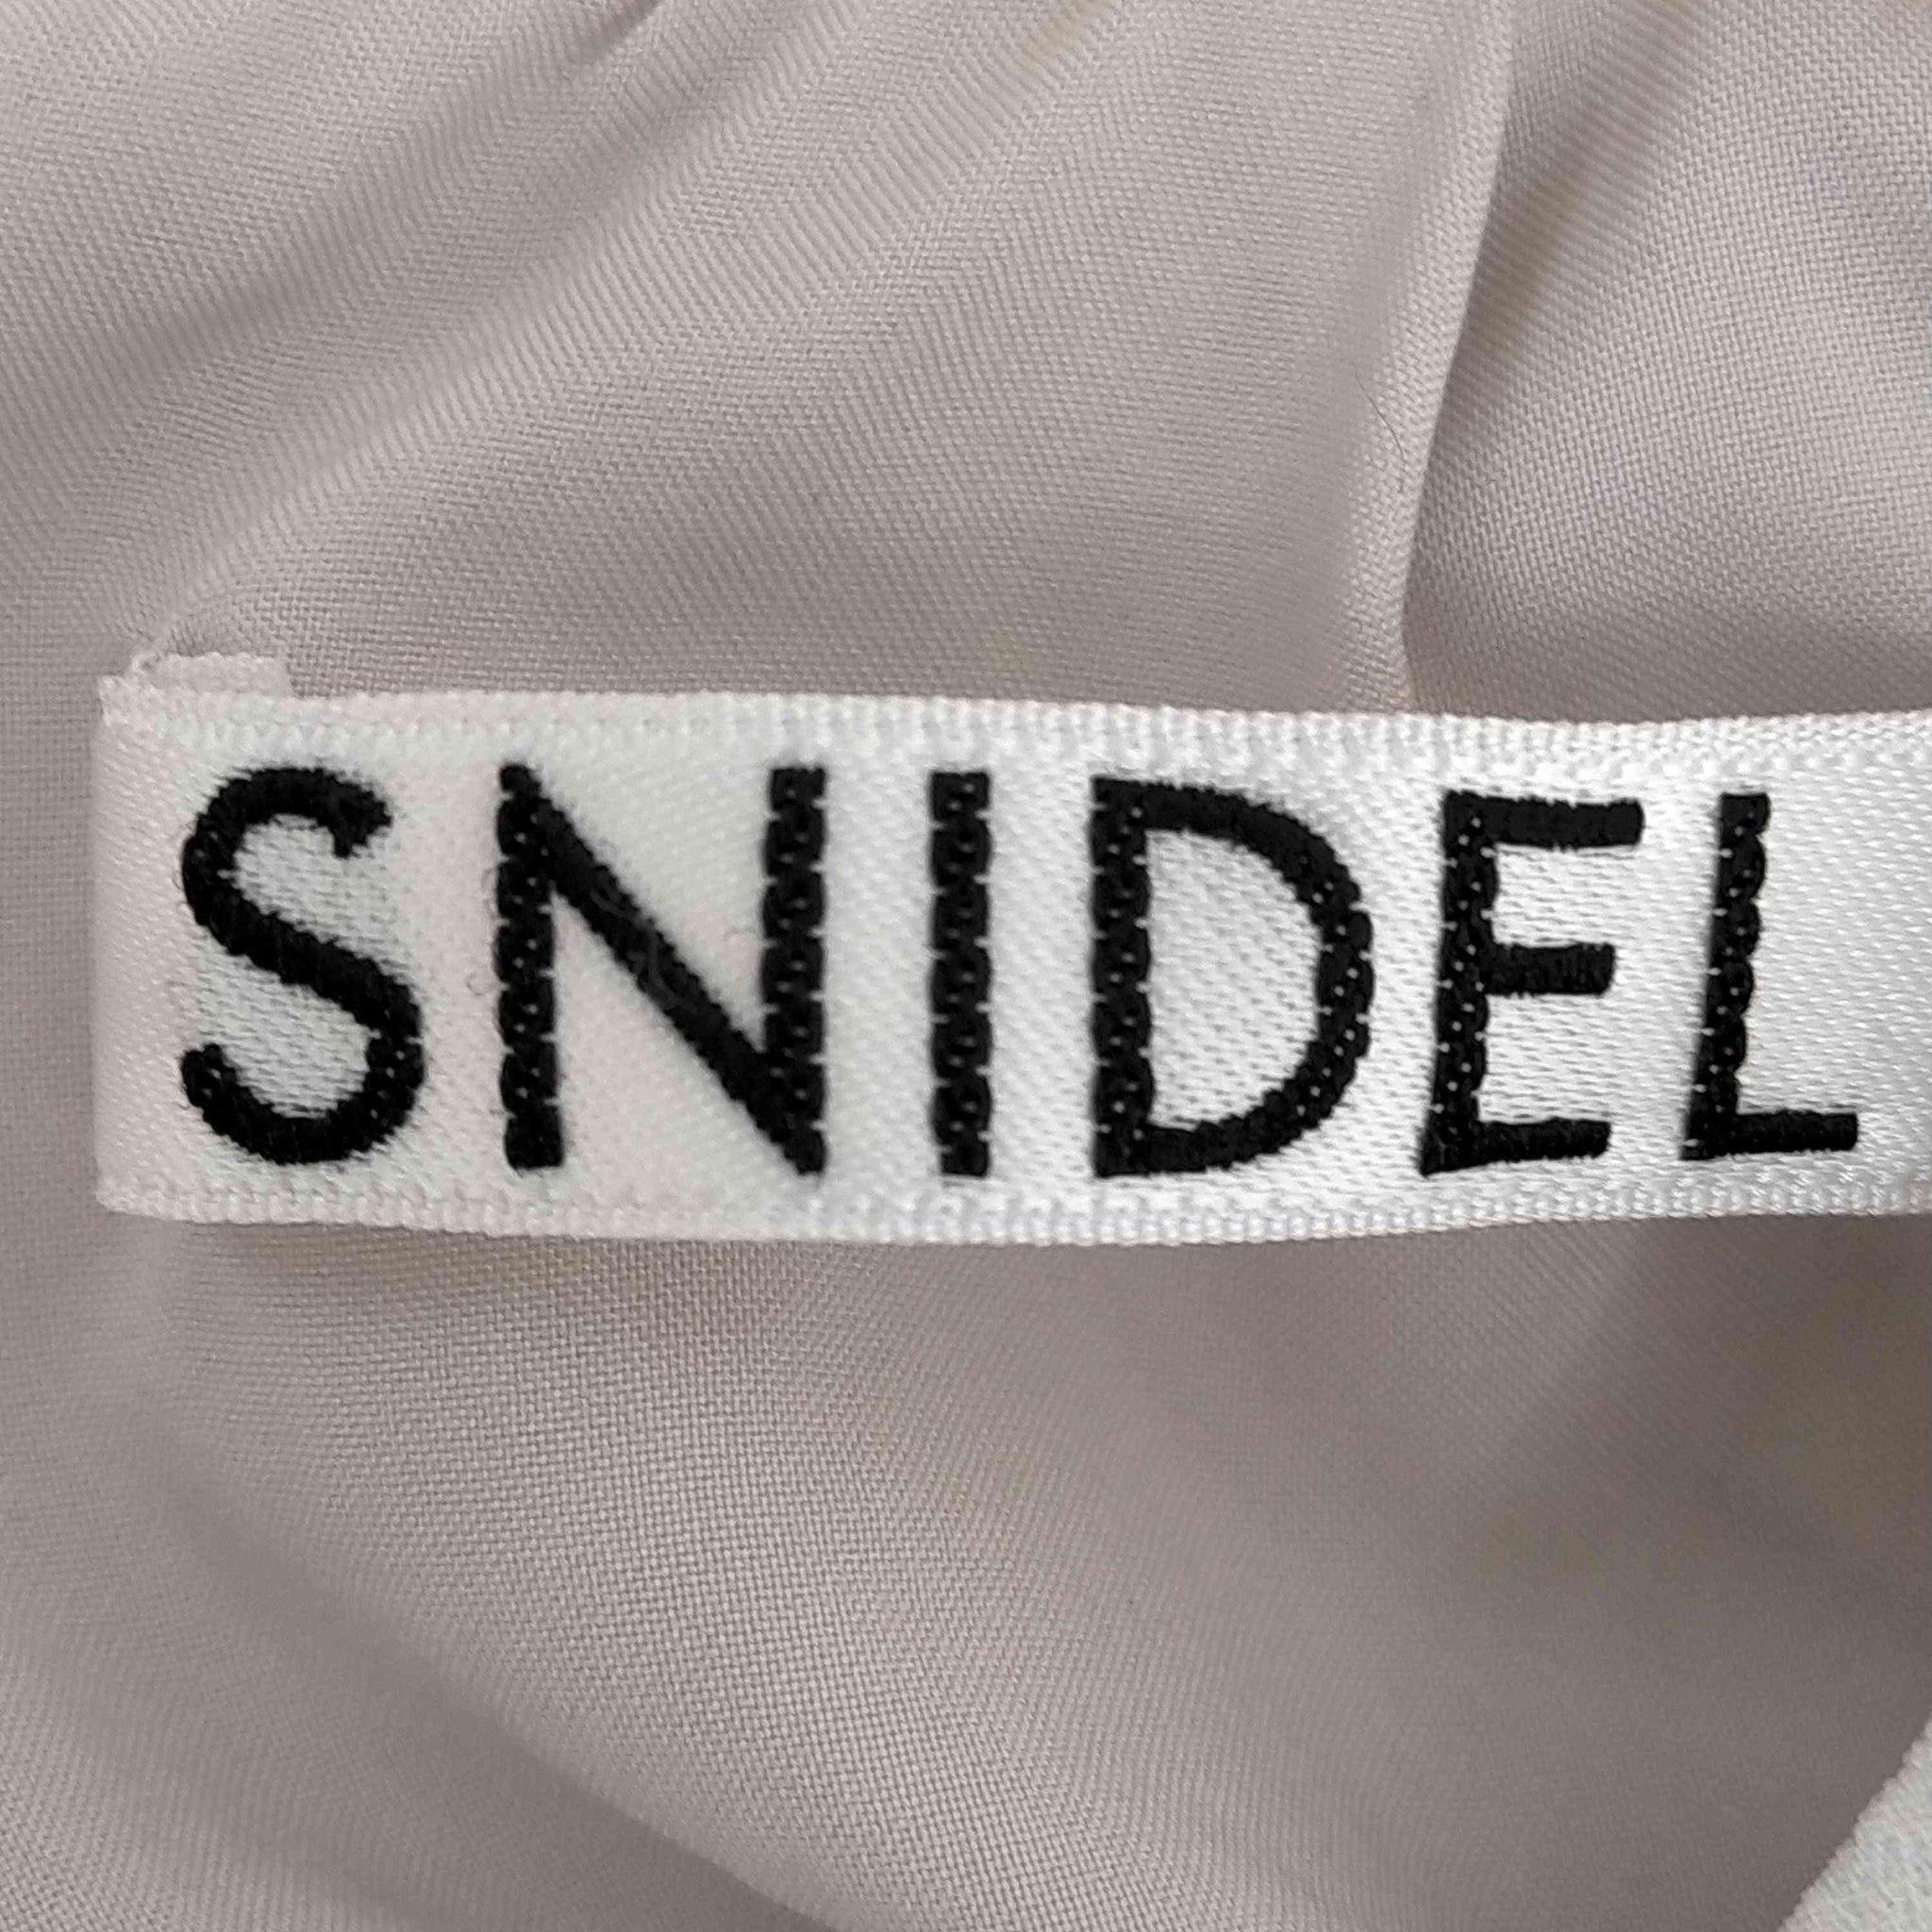 snidel(スナイデル)マーブルグラフィカワンピ